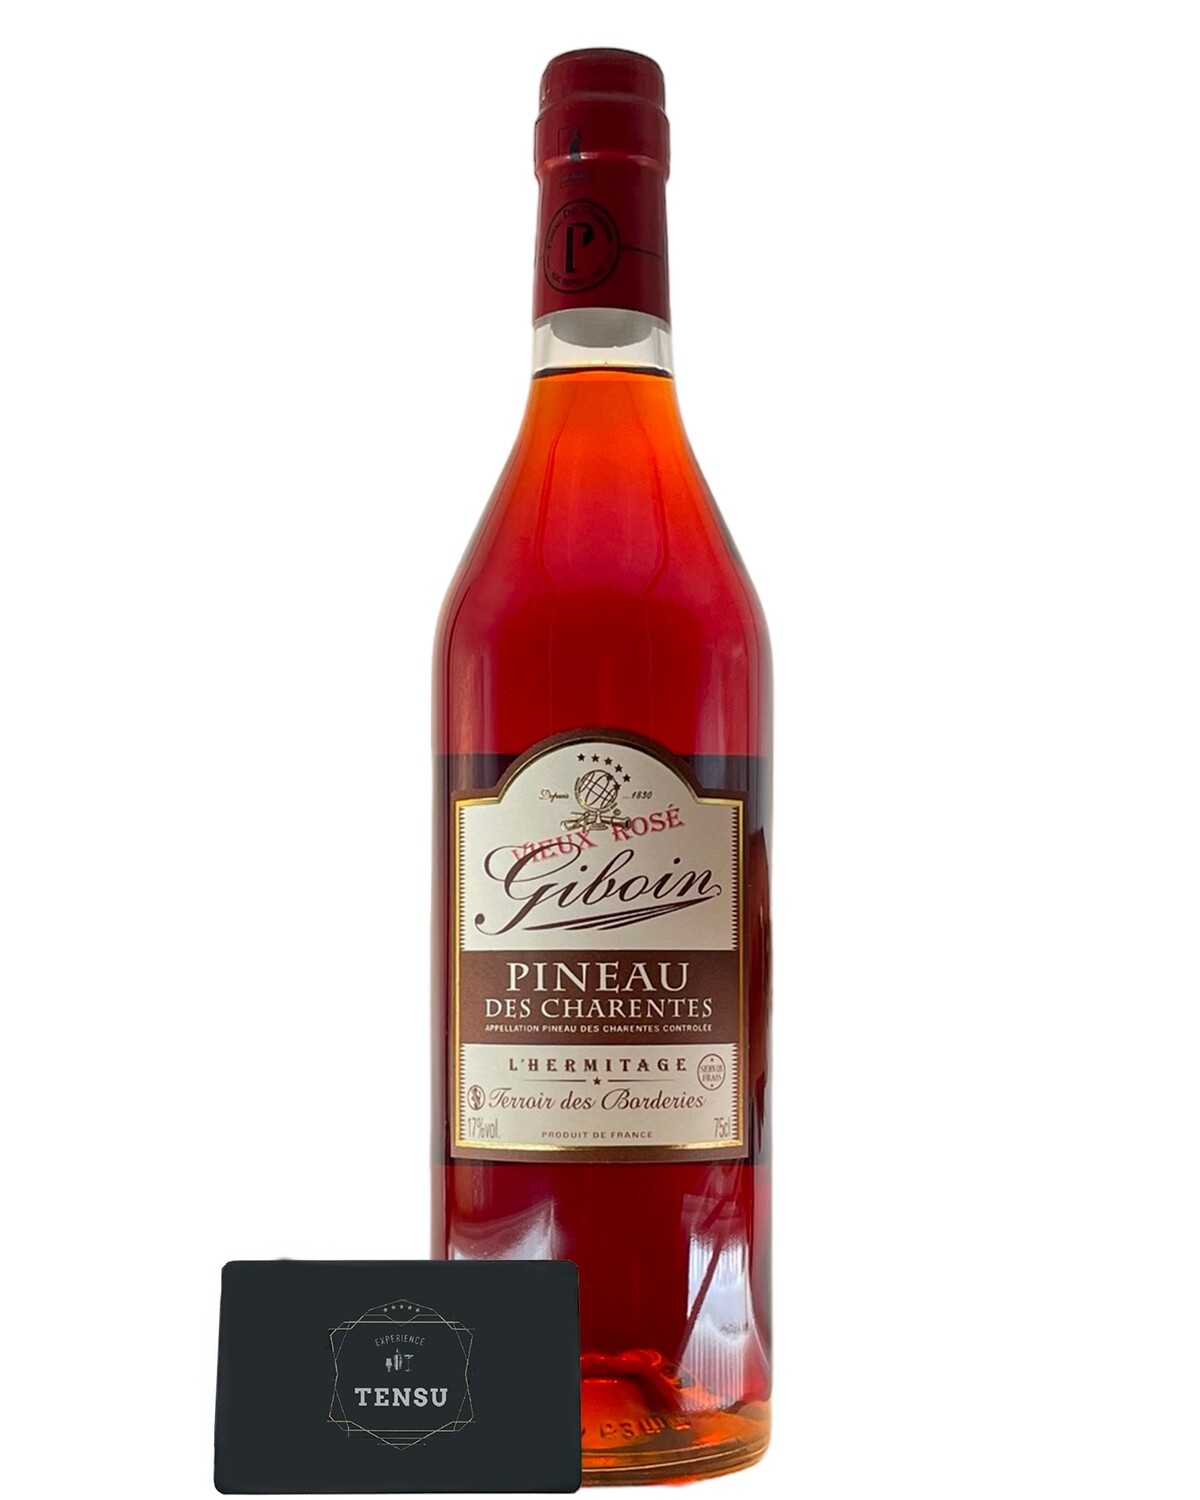 Giboin Pineau -L'Hermitage- Terroir des Borderies -Vieux Rosé- 17.0% (0.75 Liter)